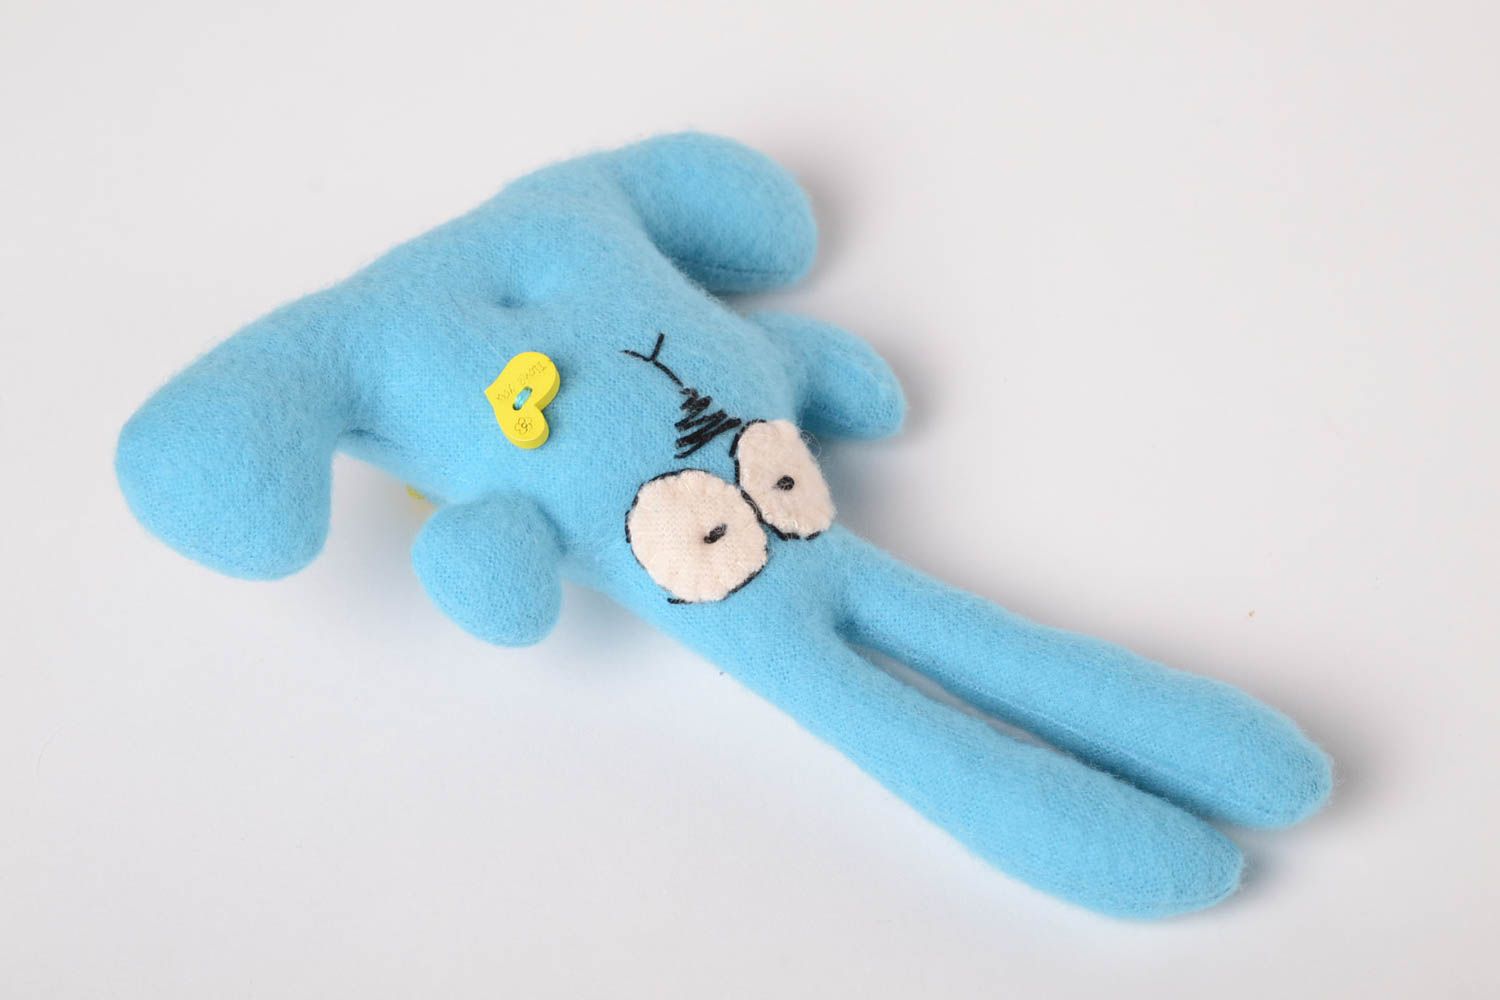 Детская игрушка ручной работы игрушка из флиса мягкая игрушка заяц яркий голубой фото 3